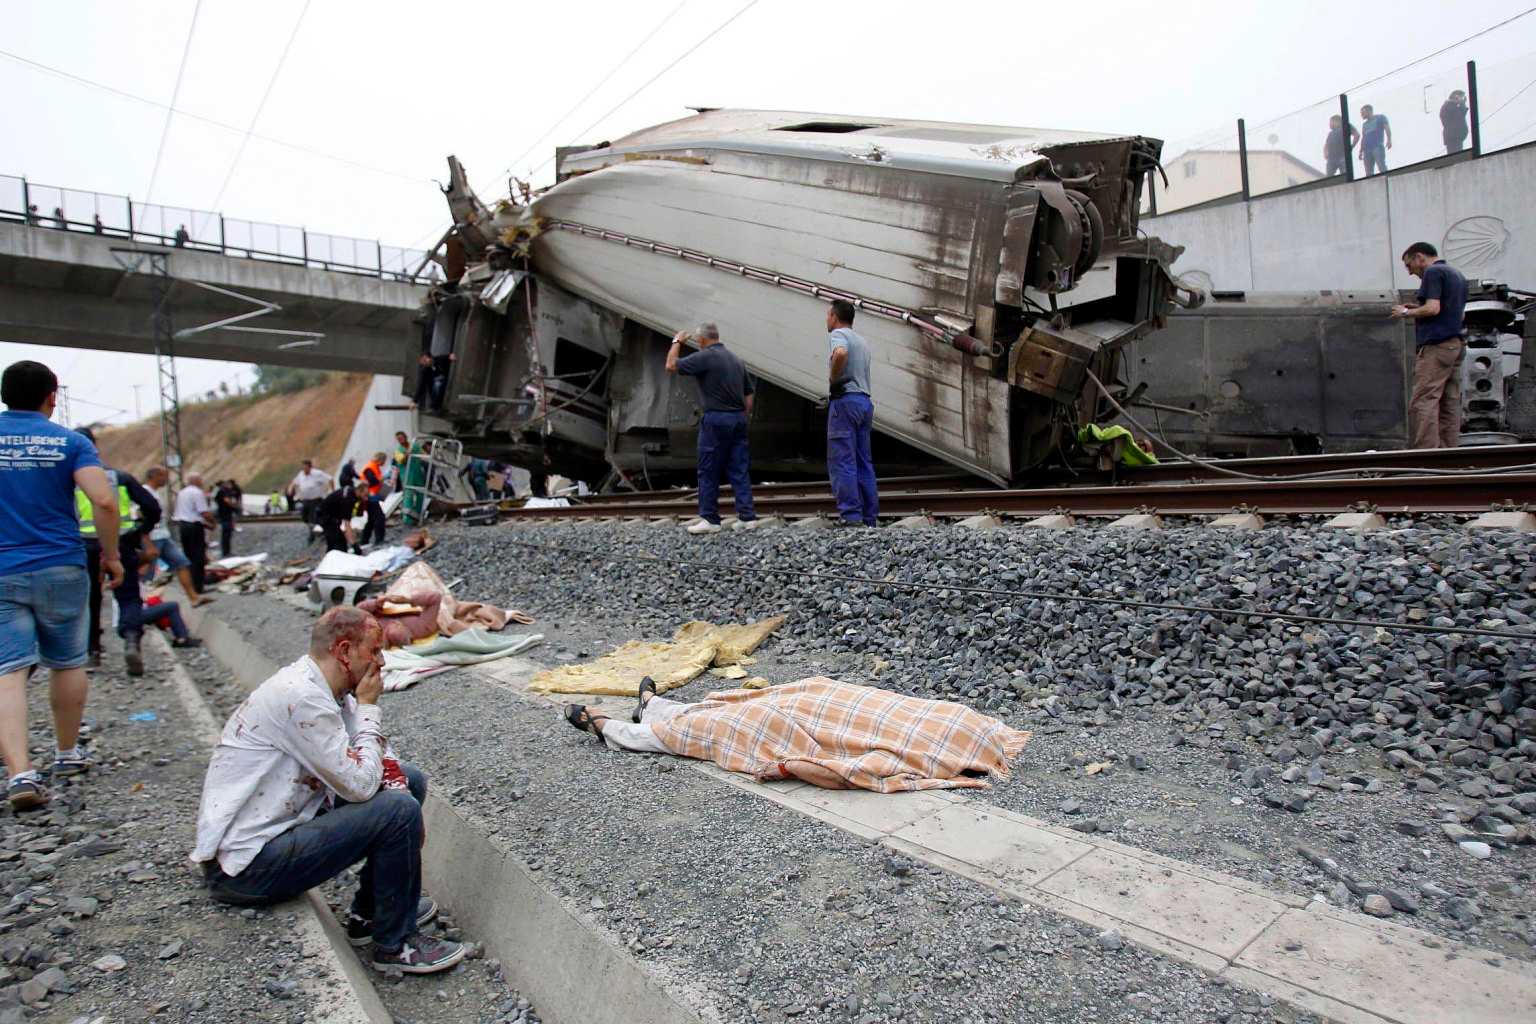 Disastro di Santiago:il conducente non avrebbe frenato in tempo, forse un italiano fra le vittime